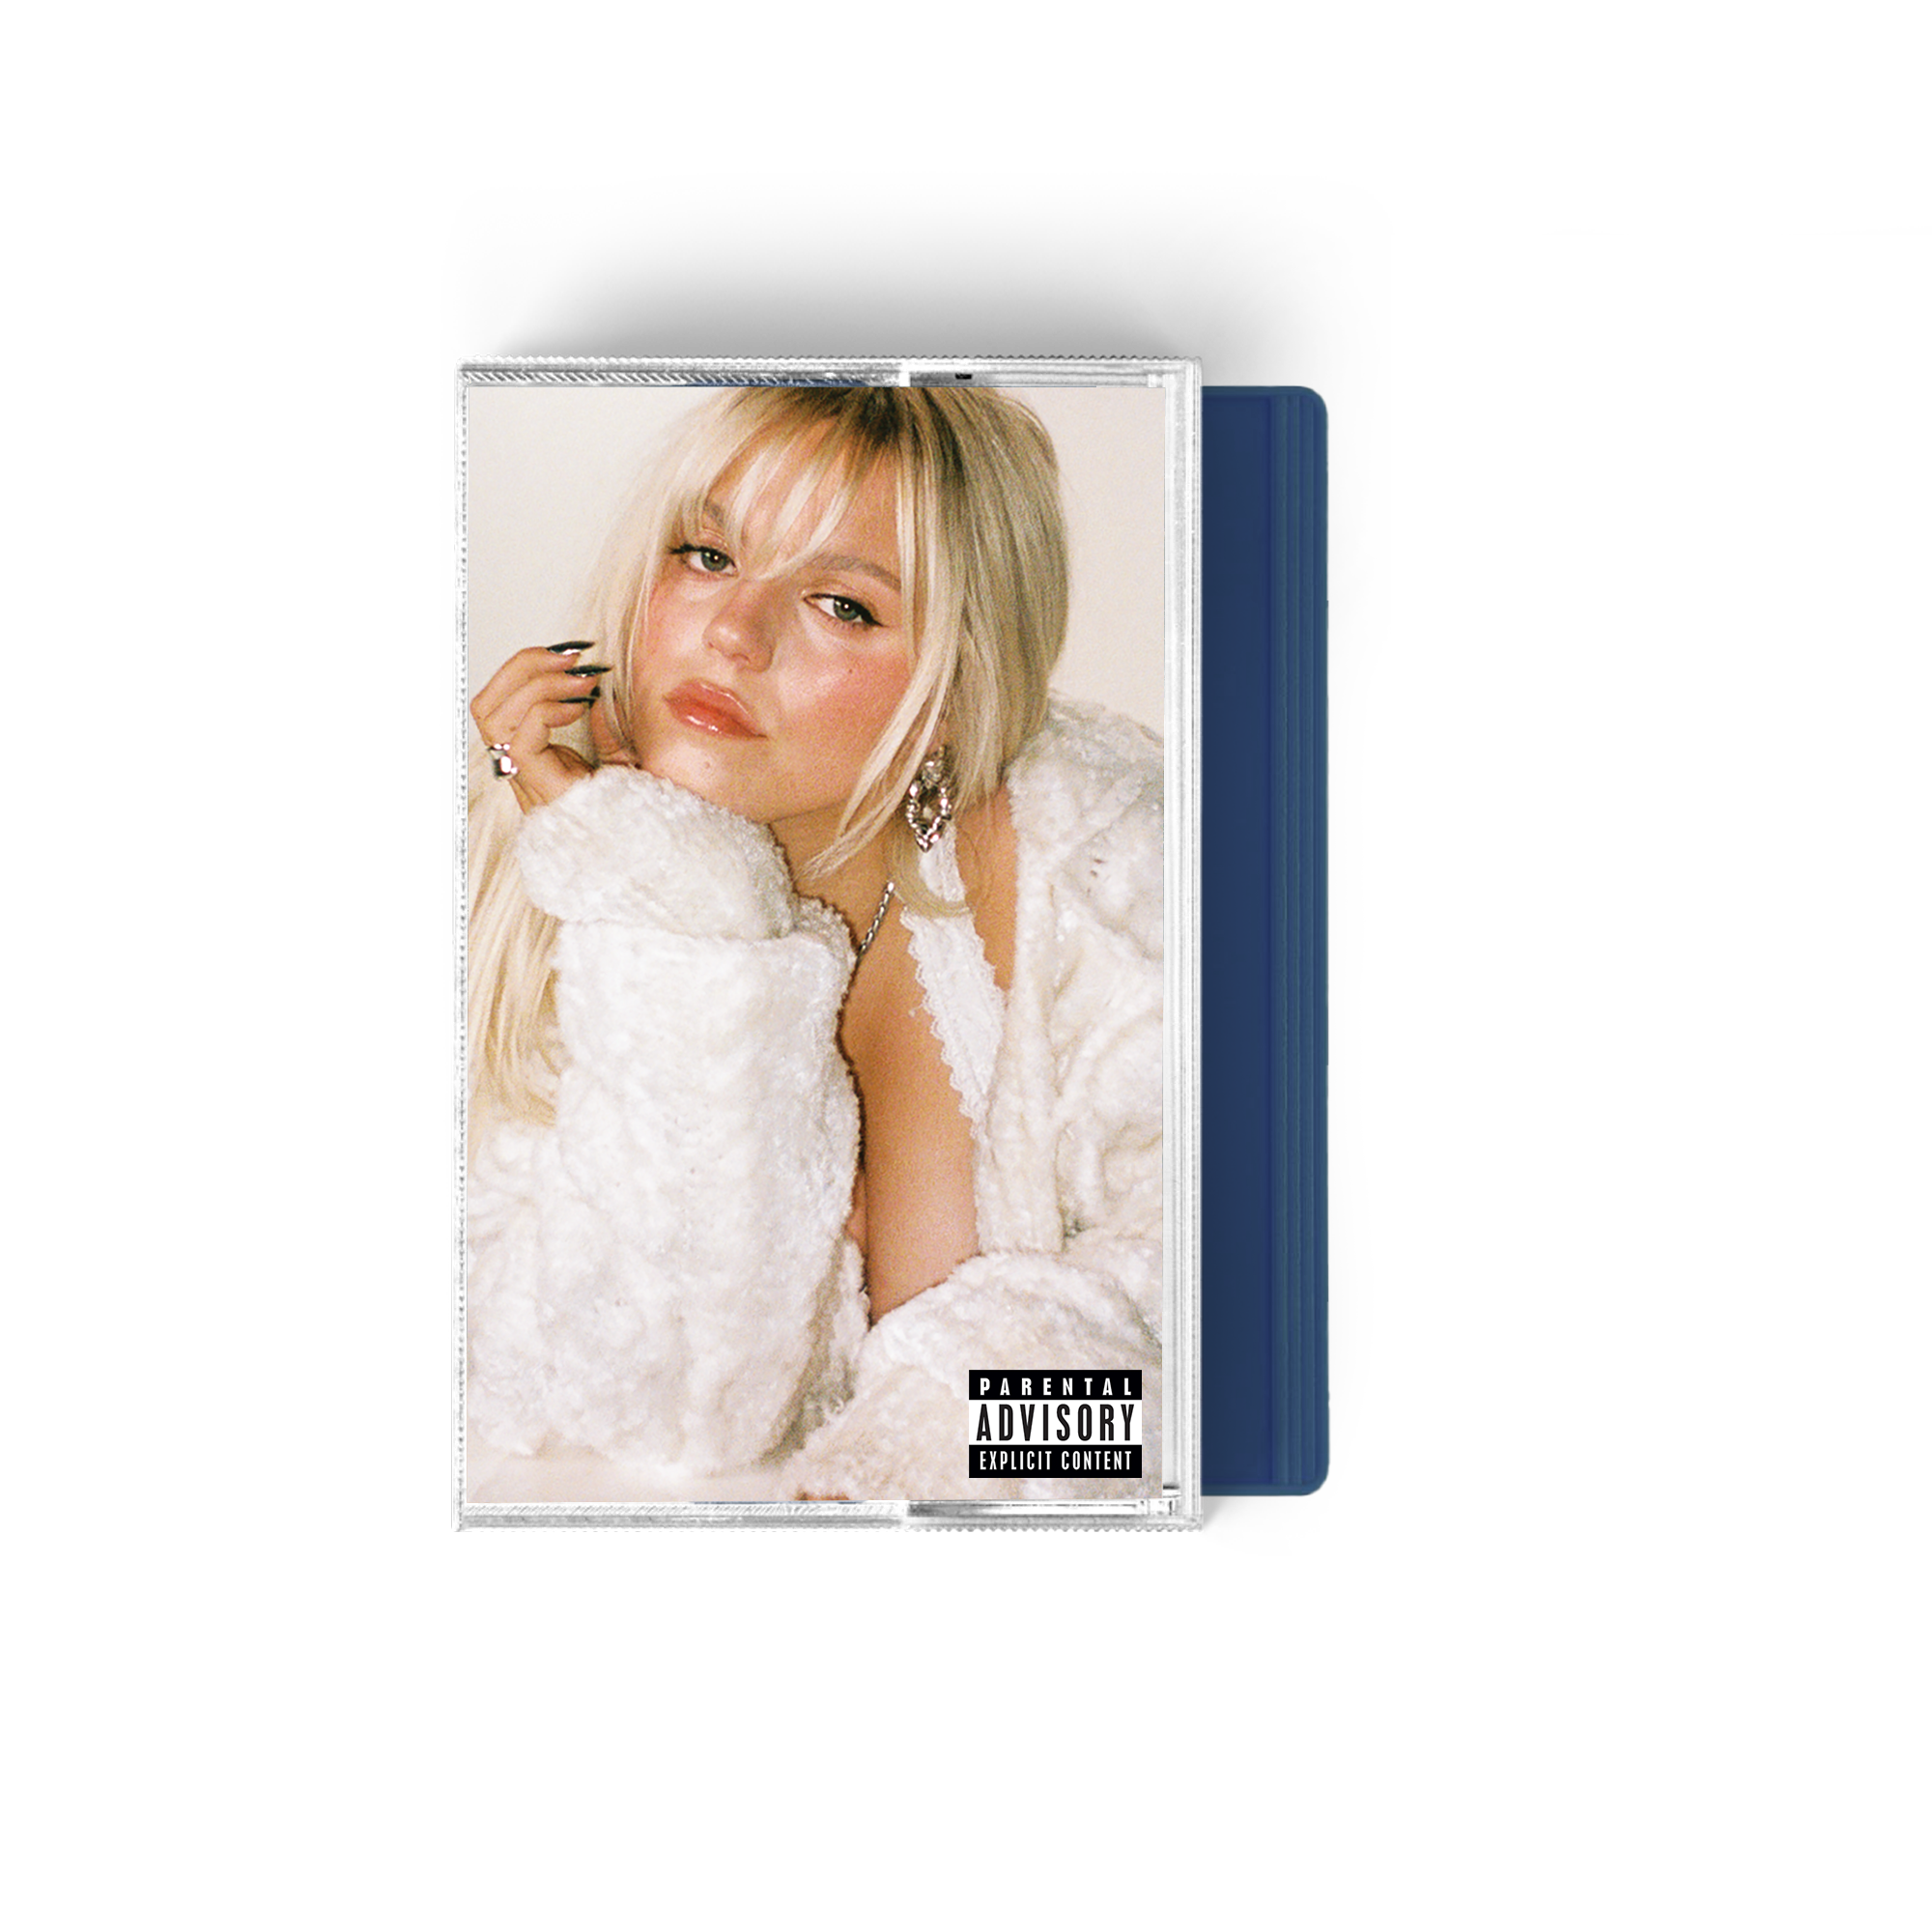 Reneé Rapp - Snow Angel Cassette #3 - UK EXCLUSIVE